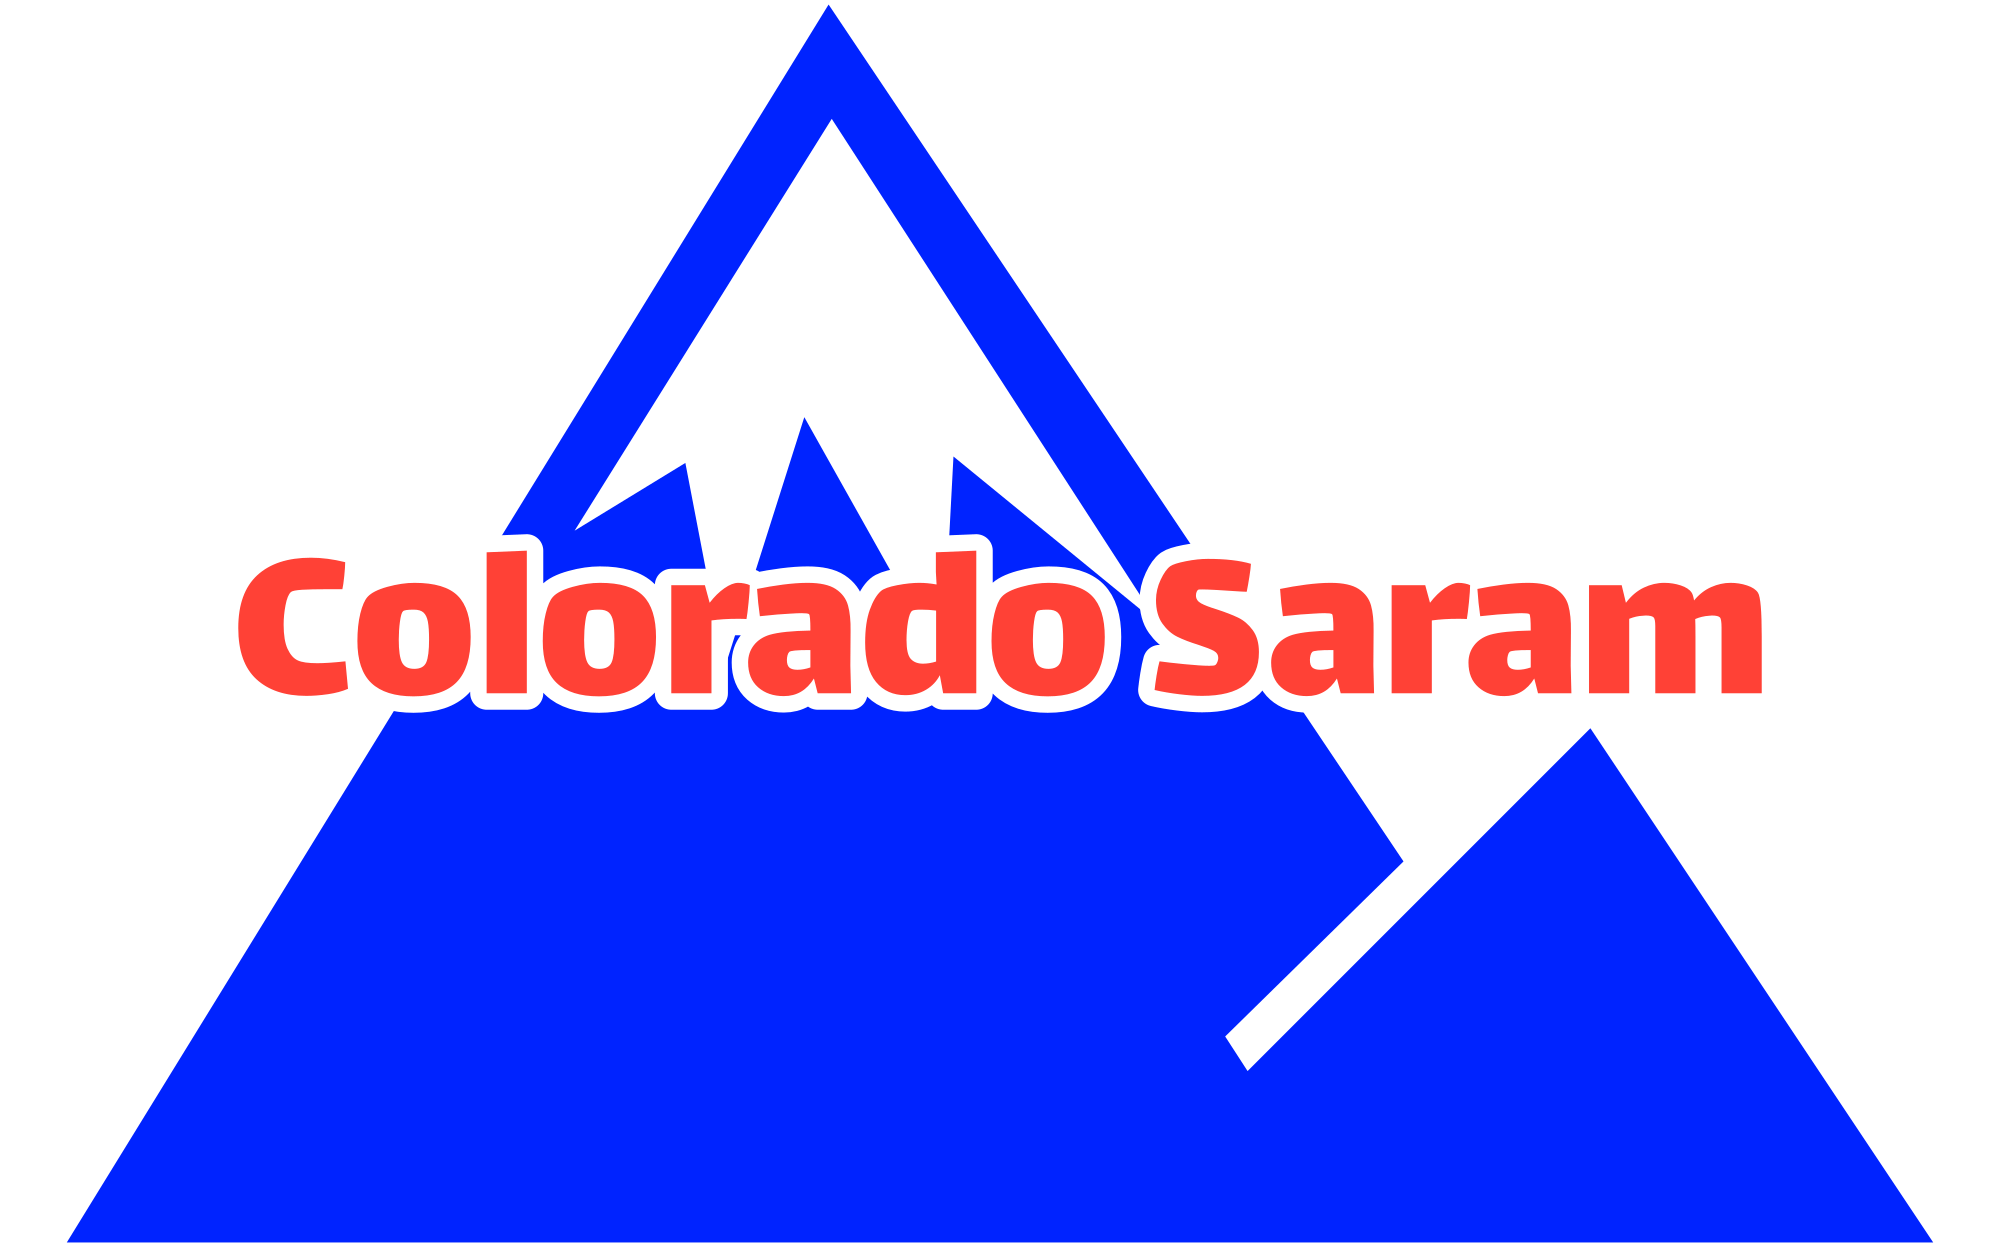 Colorado Saram Brand Logo_mountains and tagline